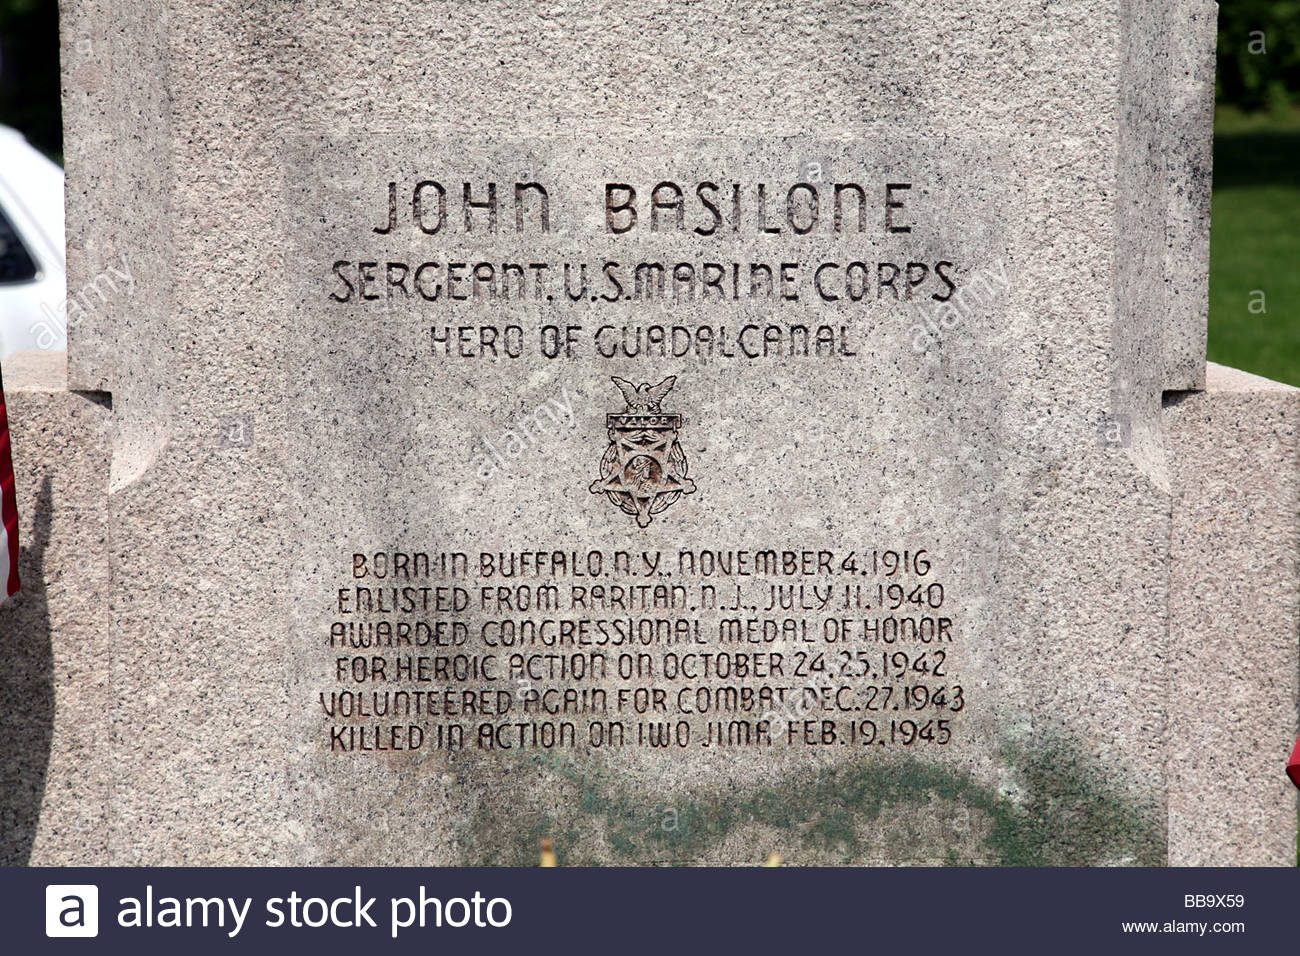 iscrizione-a-base-di-granito-della-statua-in-bronzo-ofgunnery-sergente-john-basilone-eroe-di-guerra-durante-la-seconda-guerra-mondiale-ii-guerra-mondiale-ww2-marines-americani-bb9x59